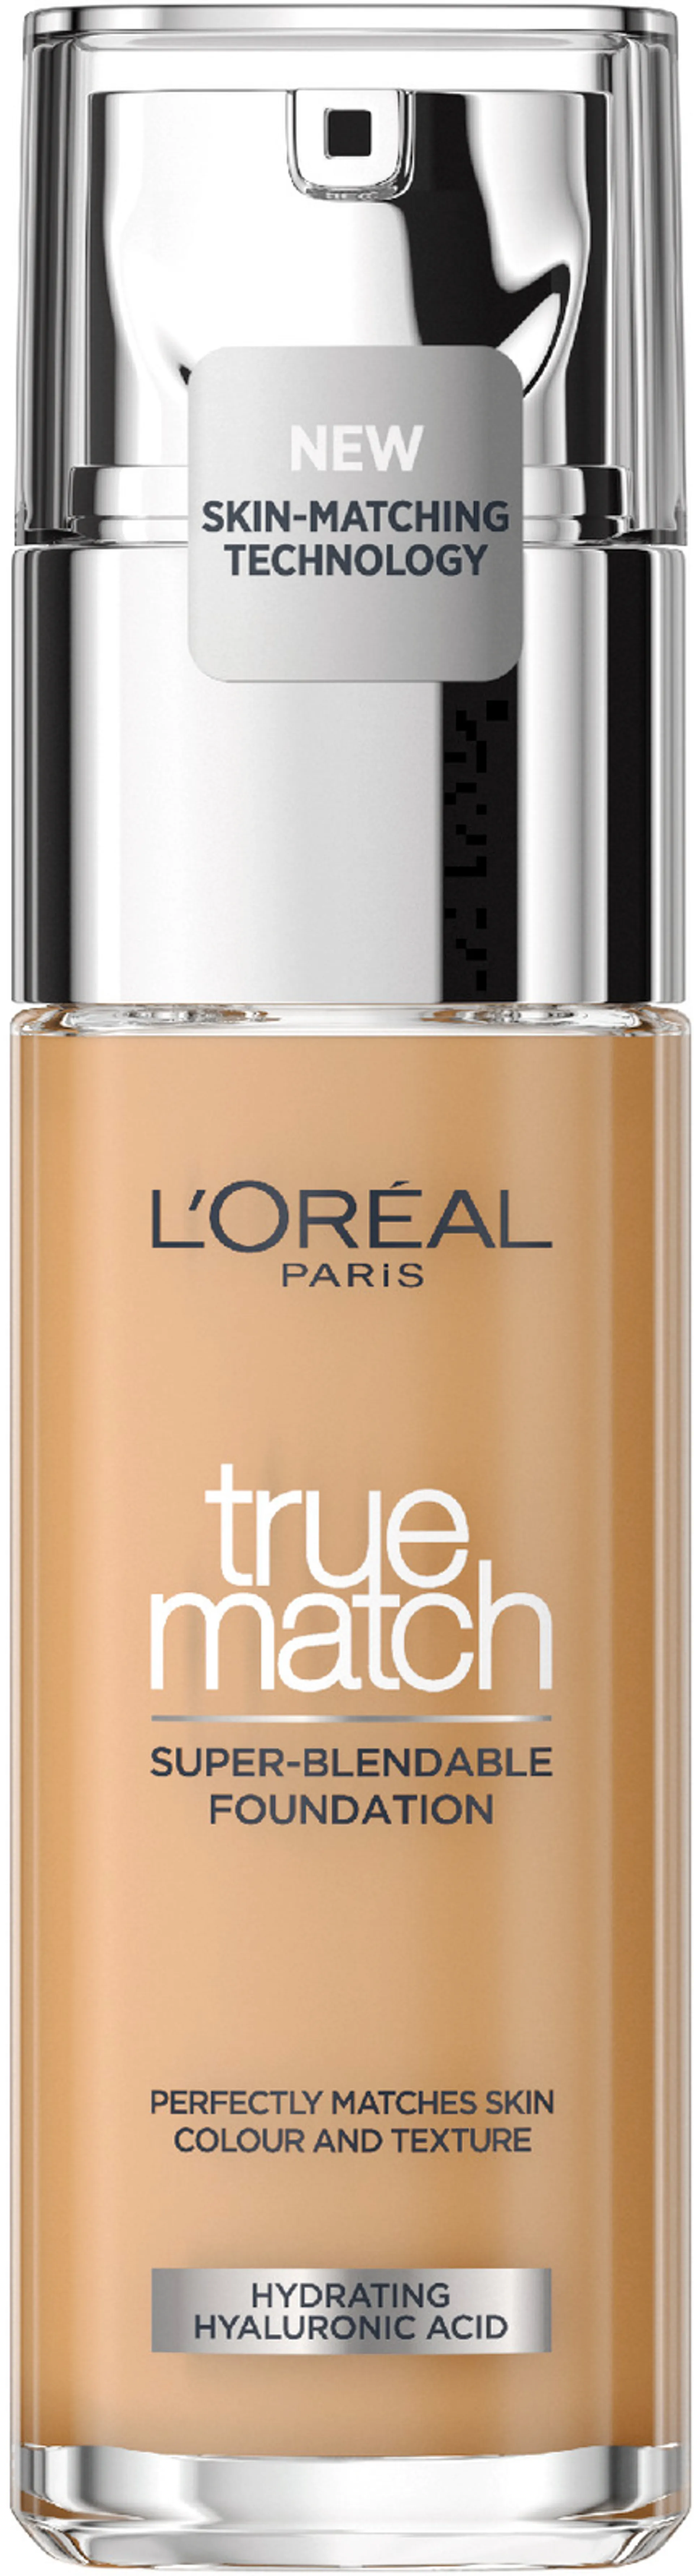 L'Oréal Paris True Match 5.W Sand Gold meikkivoide 30ml - 1